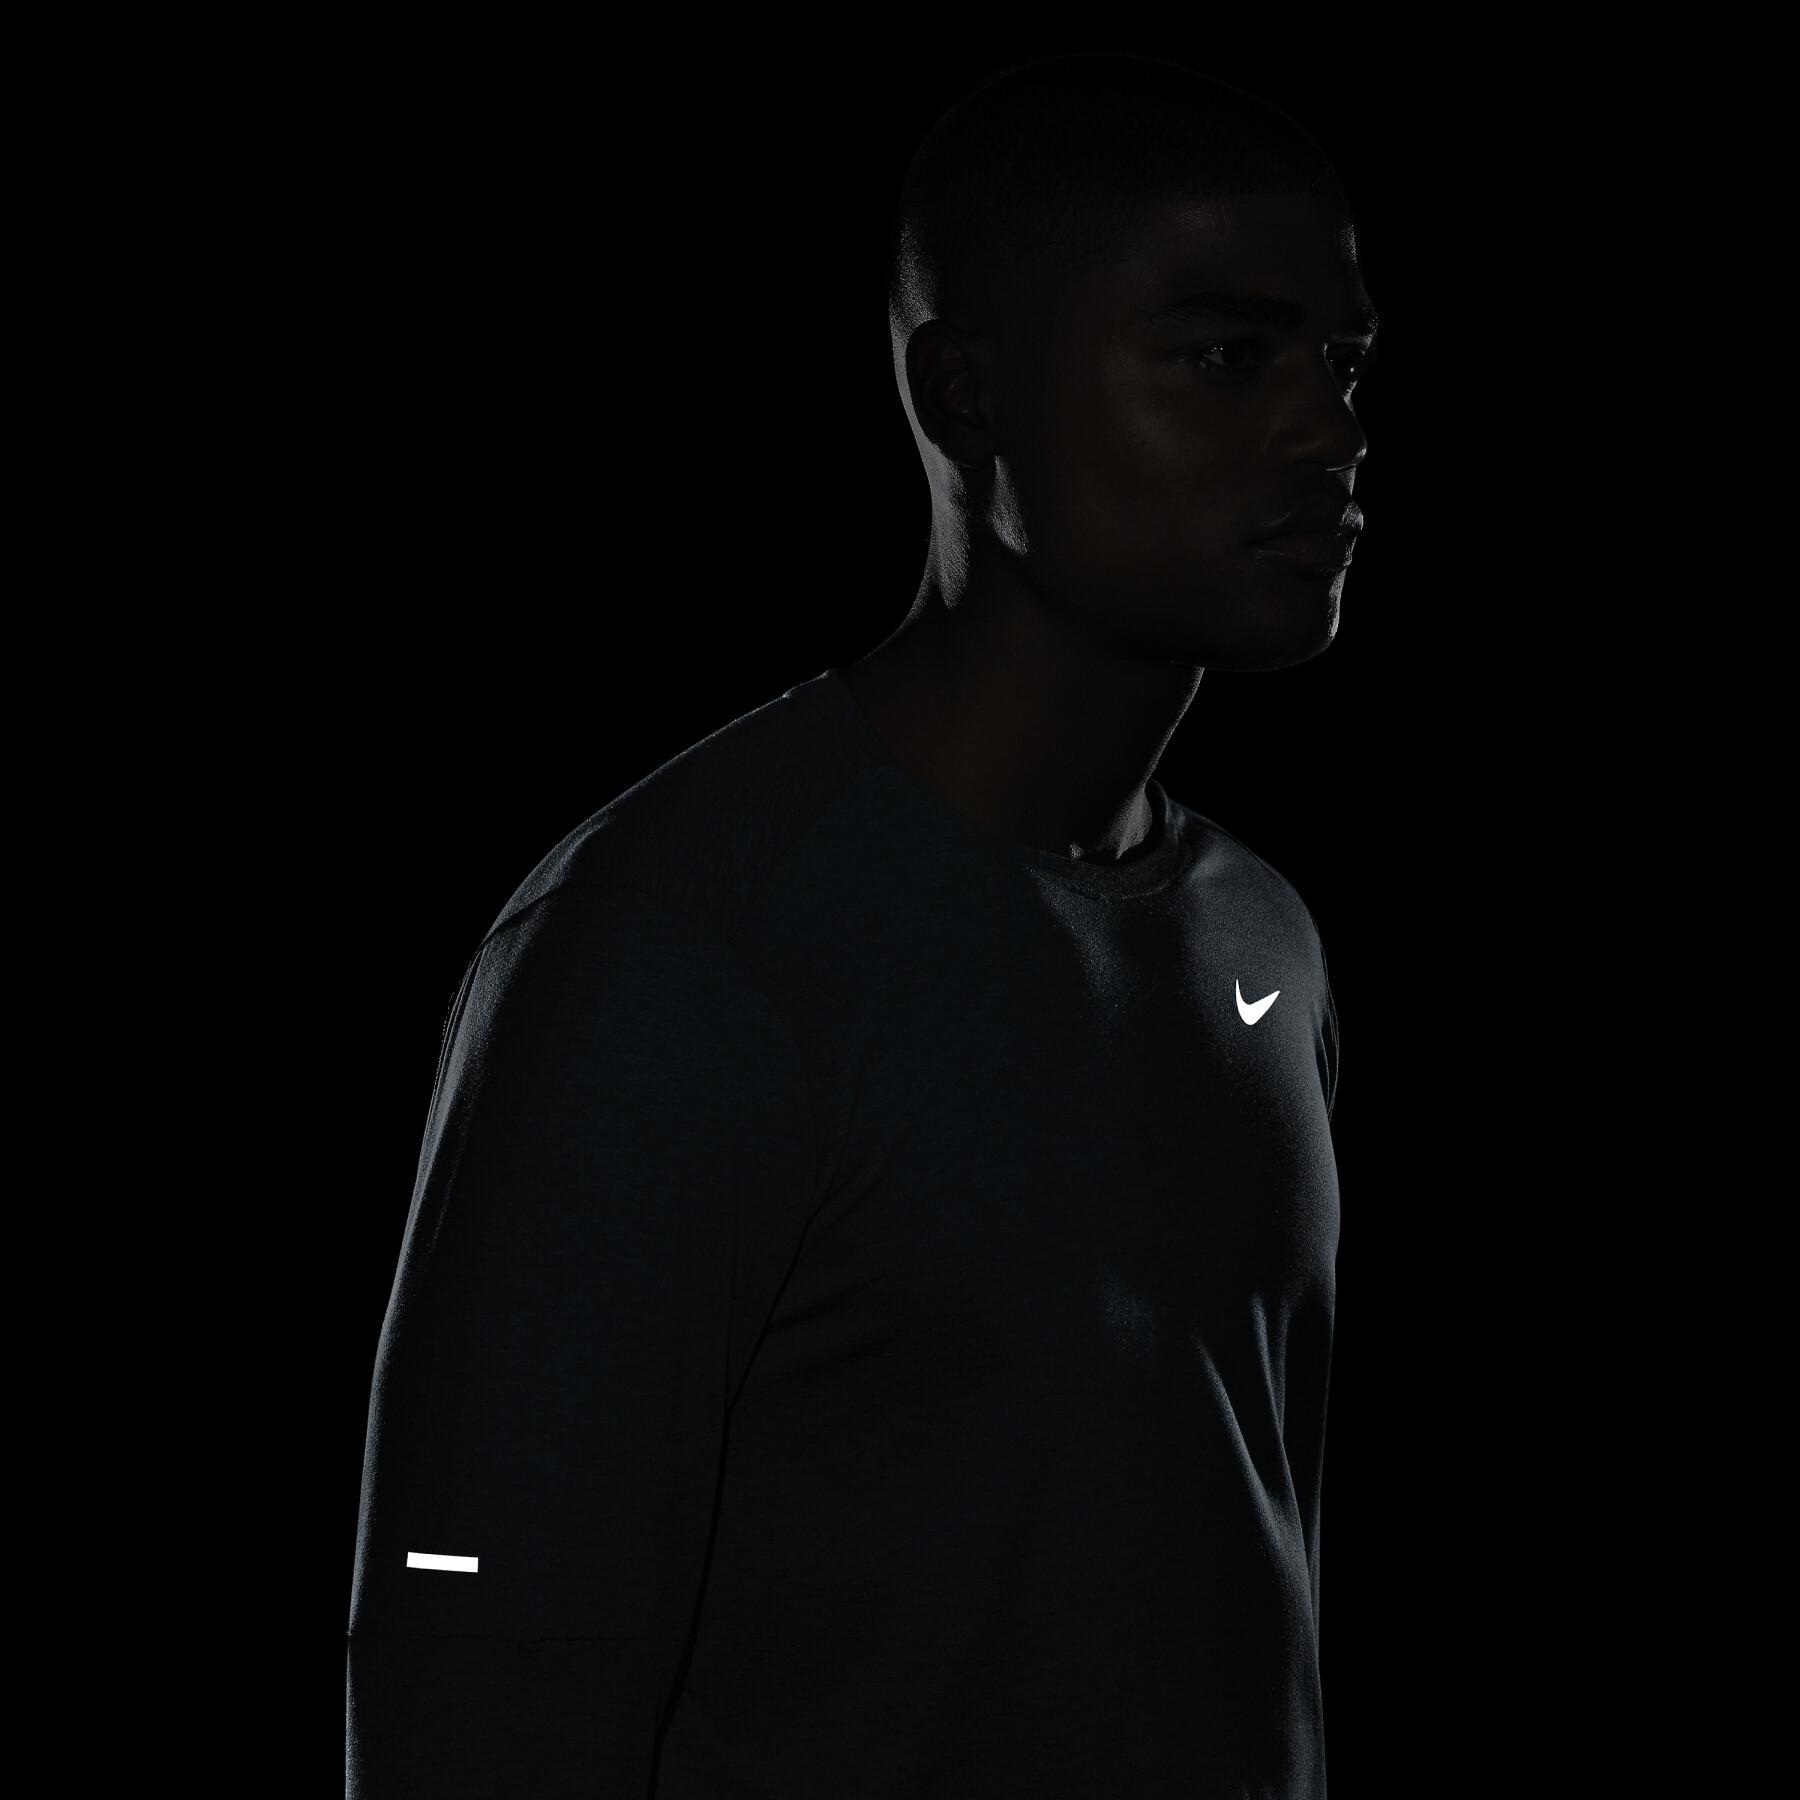 Jersey de manga larga Nike Dri-Fit Elmnt